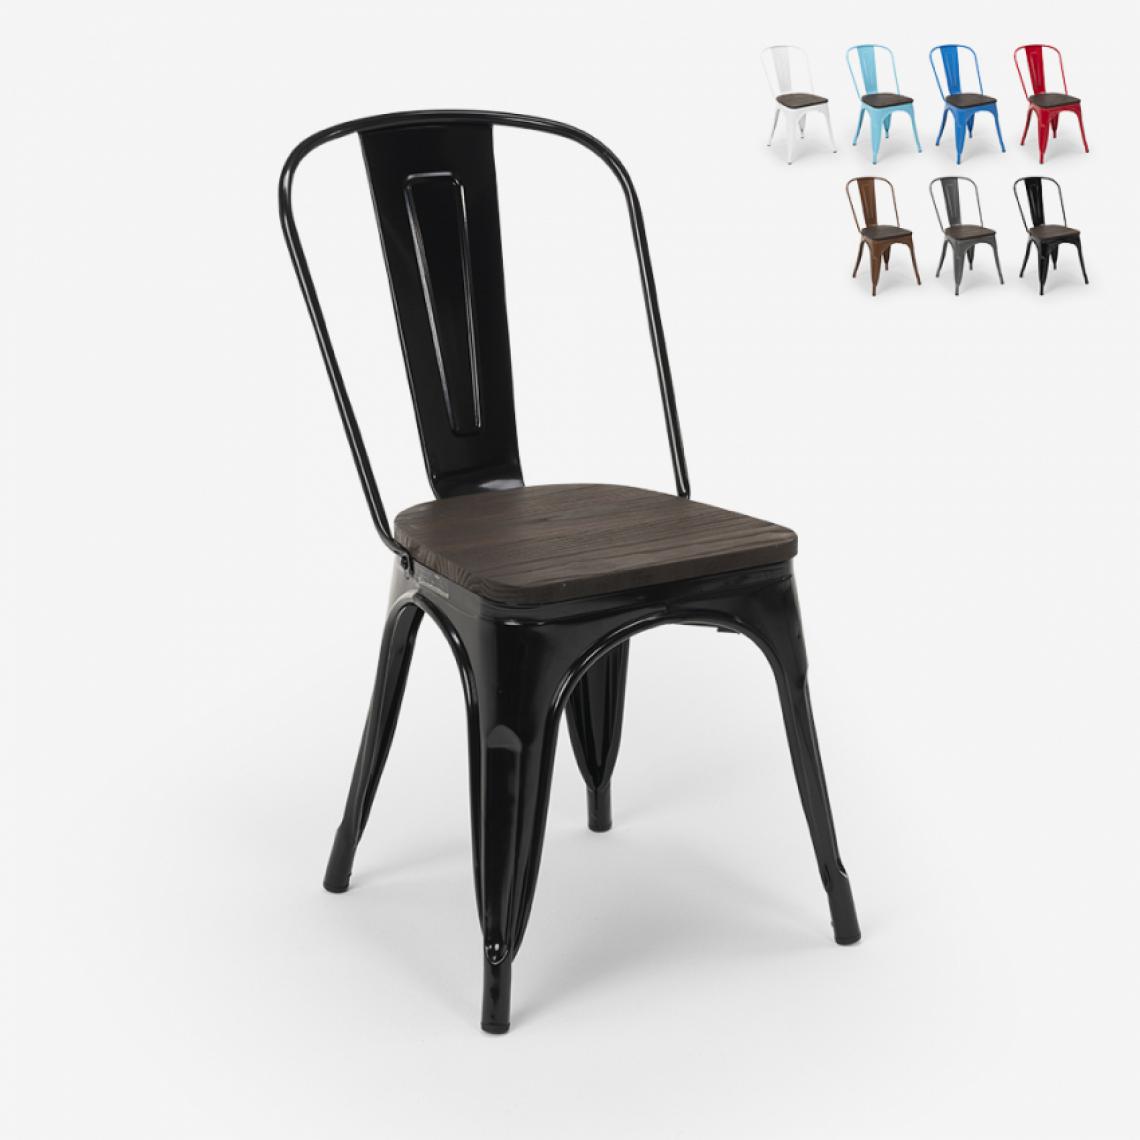 Ahd Amazing Home Design - Chaises industrielles en bois et acier Tolix pour cuisine et bar Steel Wood, Couleur: Noir - Chaises